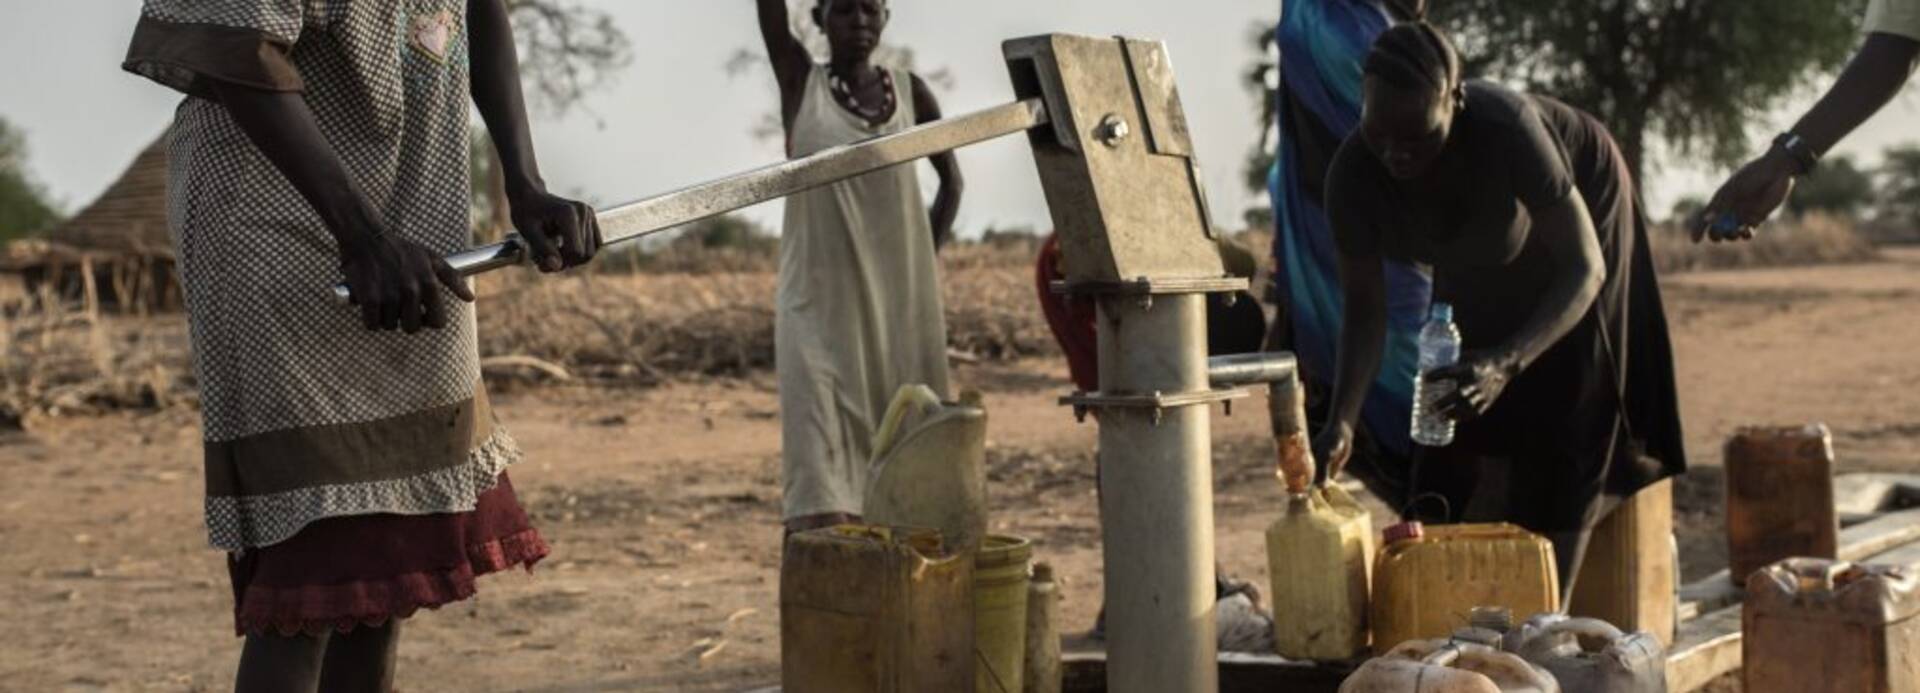 Coronavirus: Sauberes Wasser und Hygienemaßnahmen können Leben retten